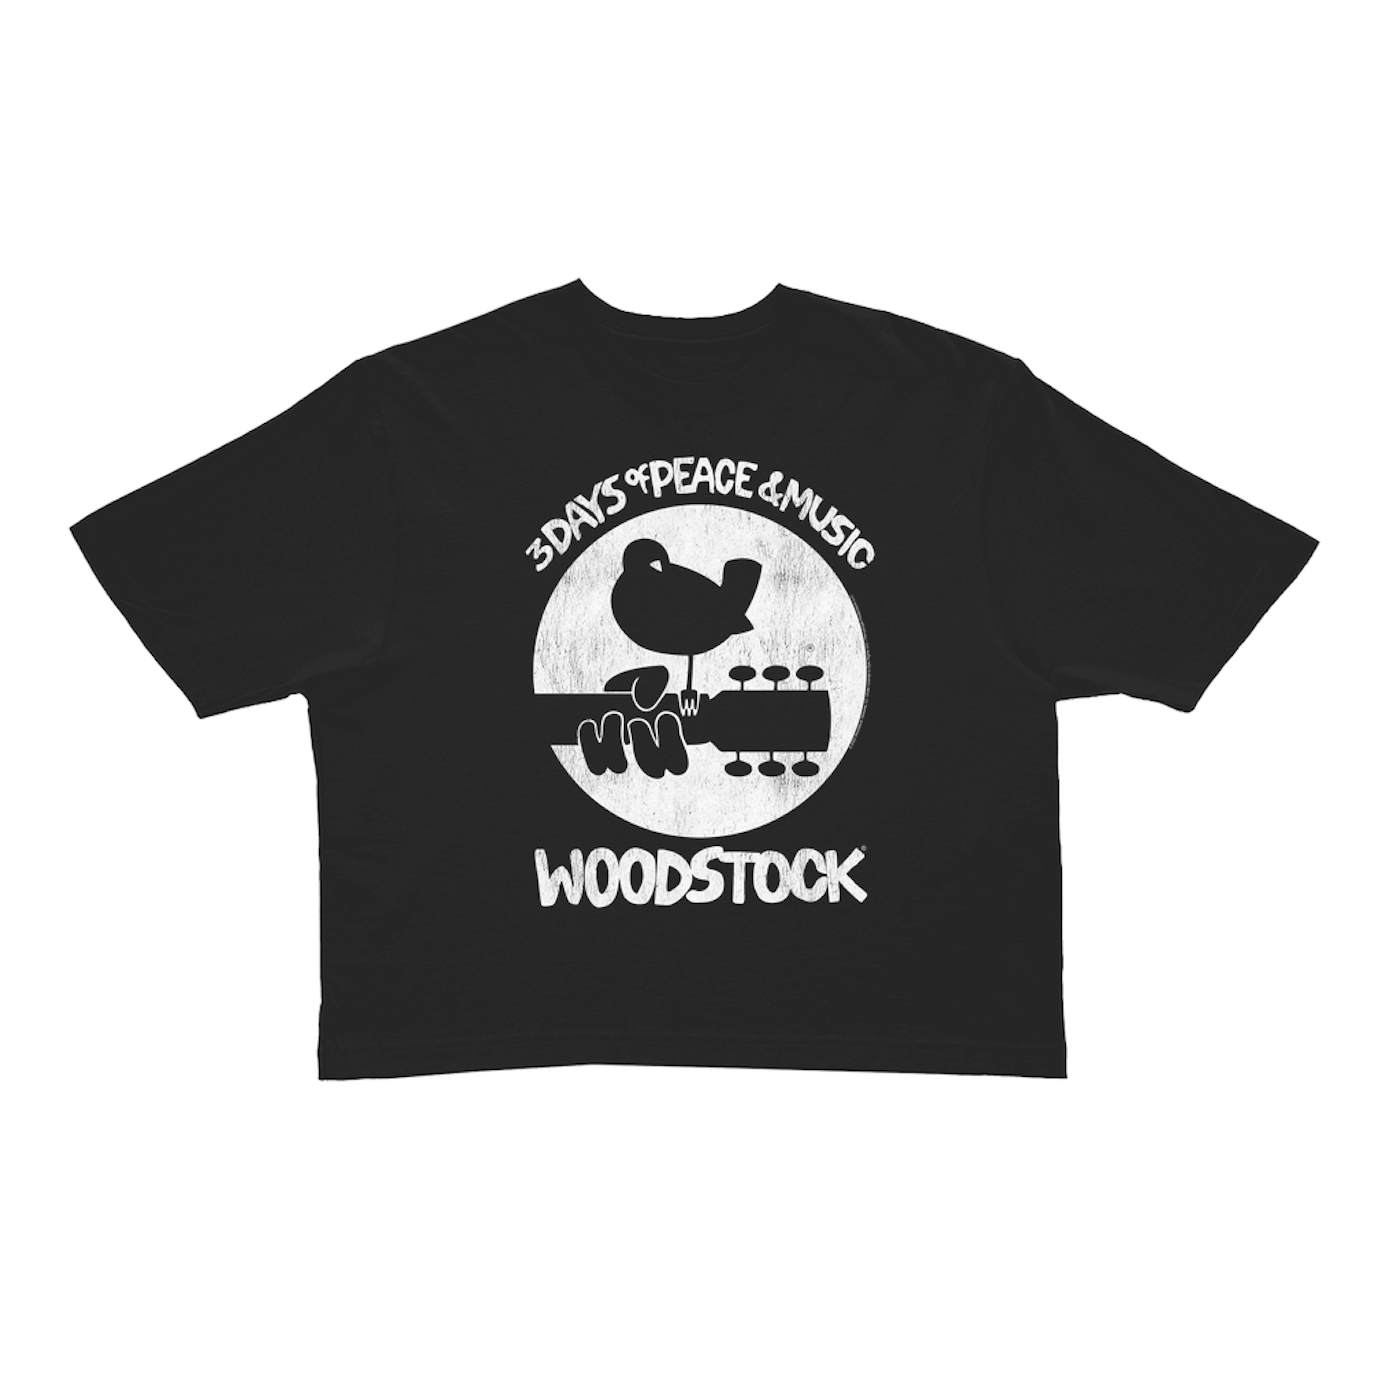 Woodstock Ladies' Crop Tee | Woodstock Bird And Guitar All In White (Merchbar Exclusive) Woodstock Crop T-shirt